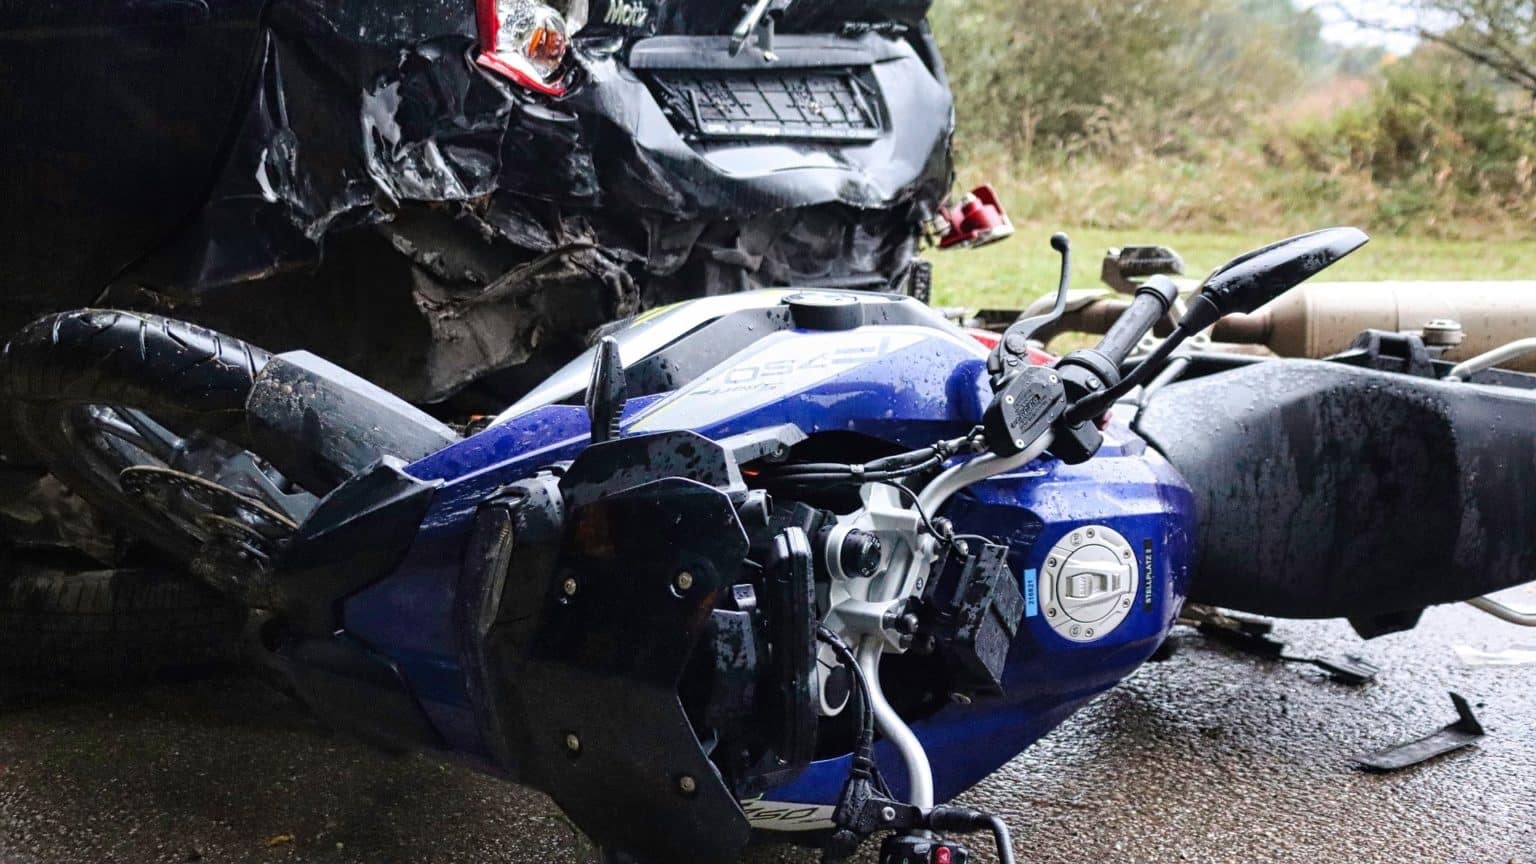 Primošten: Neosiguranim i neregistriranim motociklom pao u zavoju i teže se ozlijedio